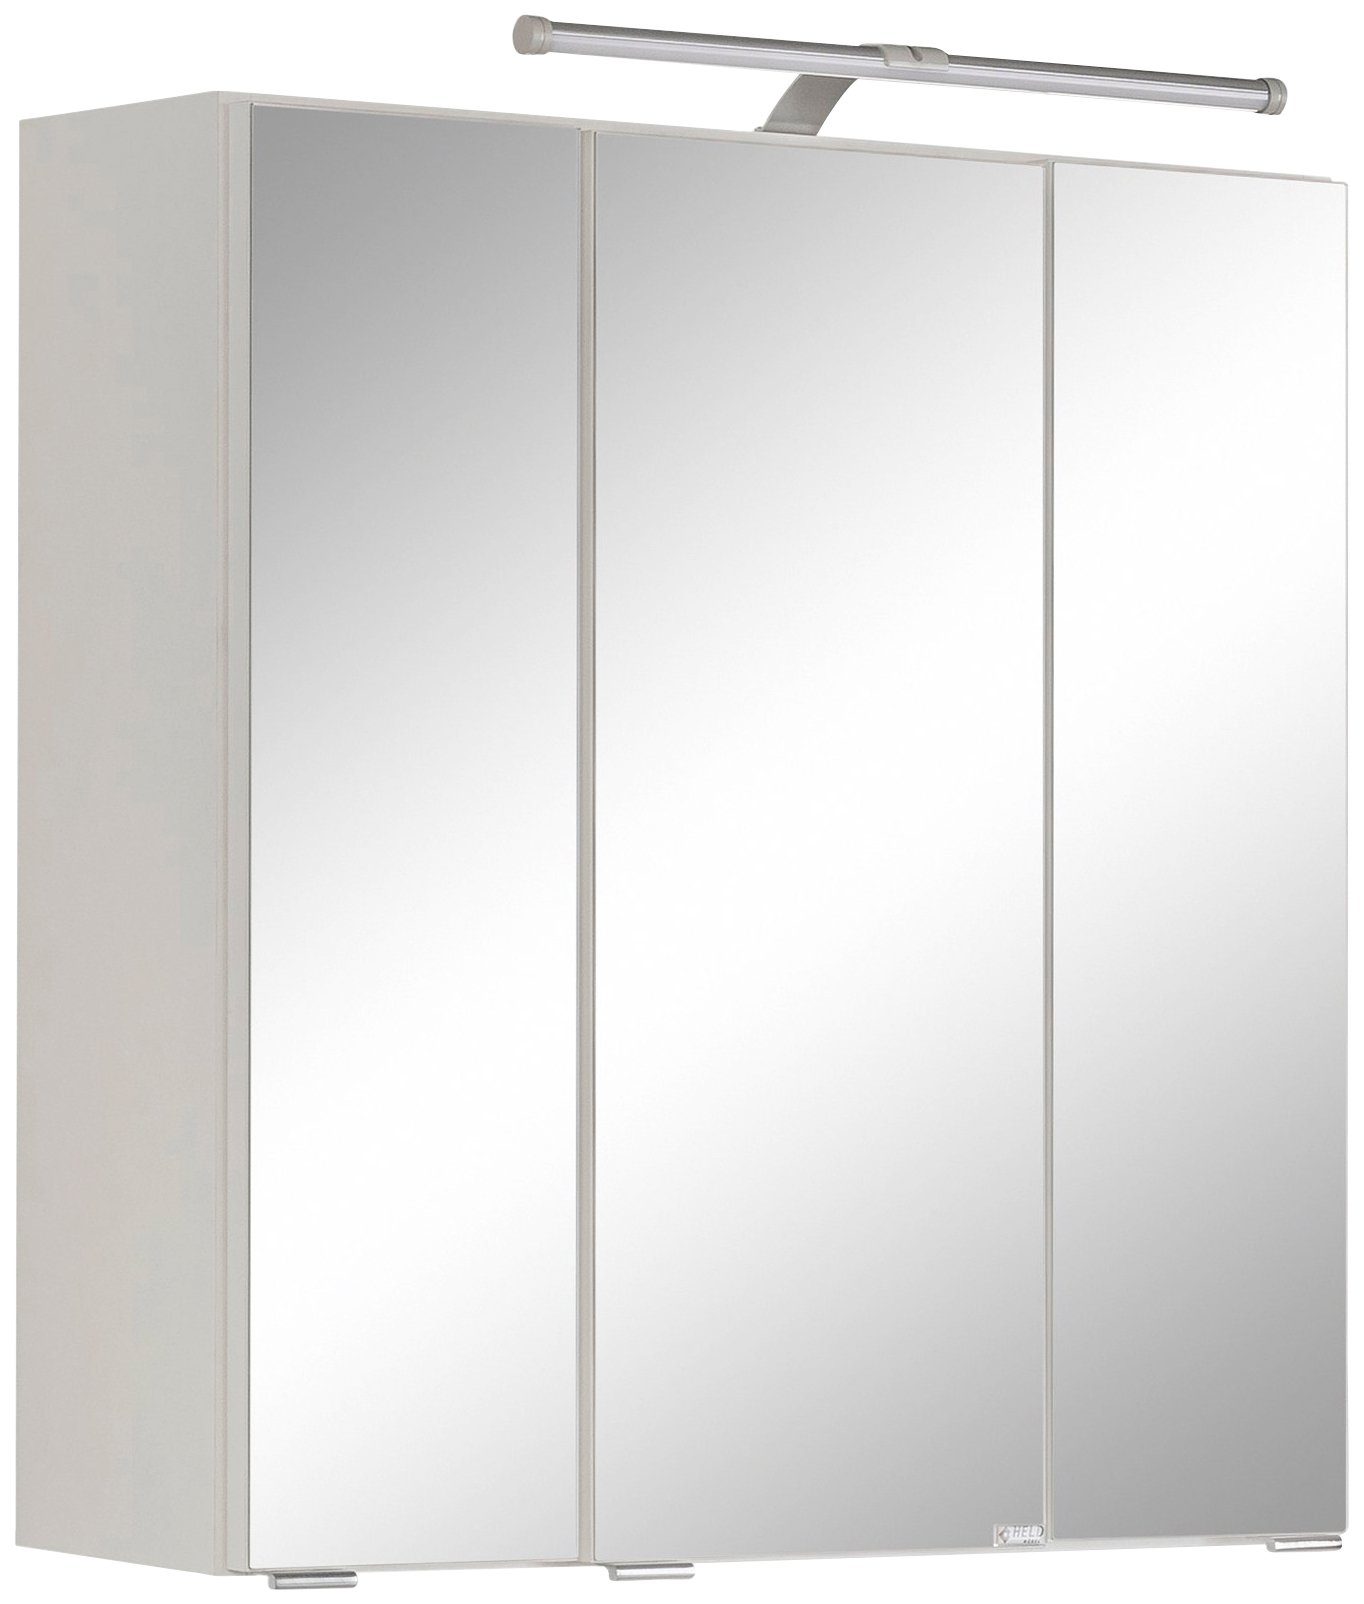 HELD MÖBEL Spiegelschrank Avignon weiß/weiß | weiß | Spiegelschränke